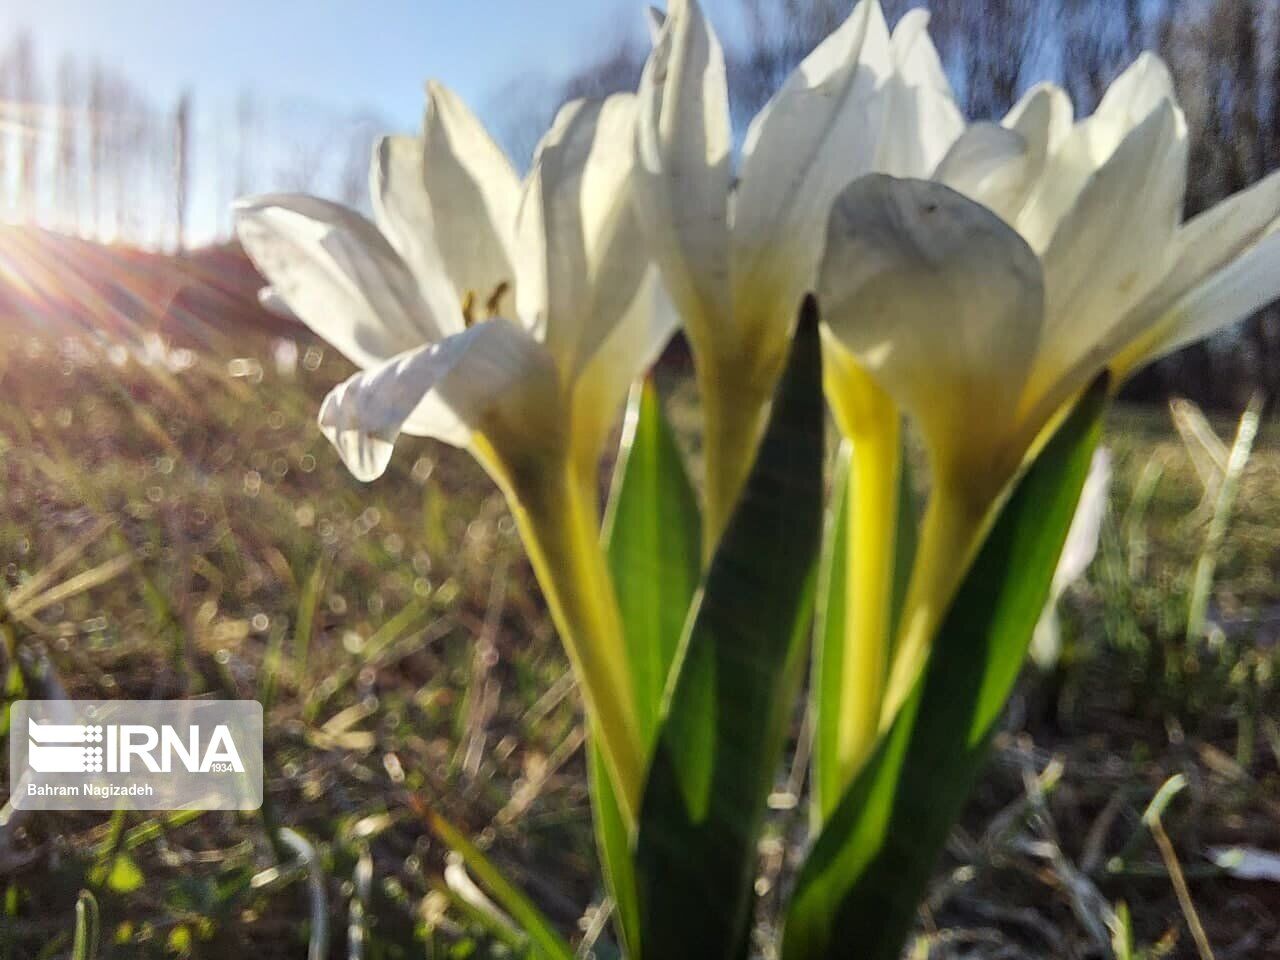 Iris flower in northwestern Iran heralds spring time